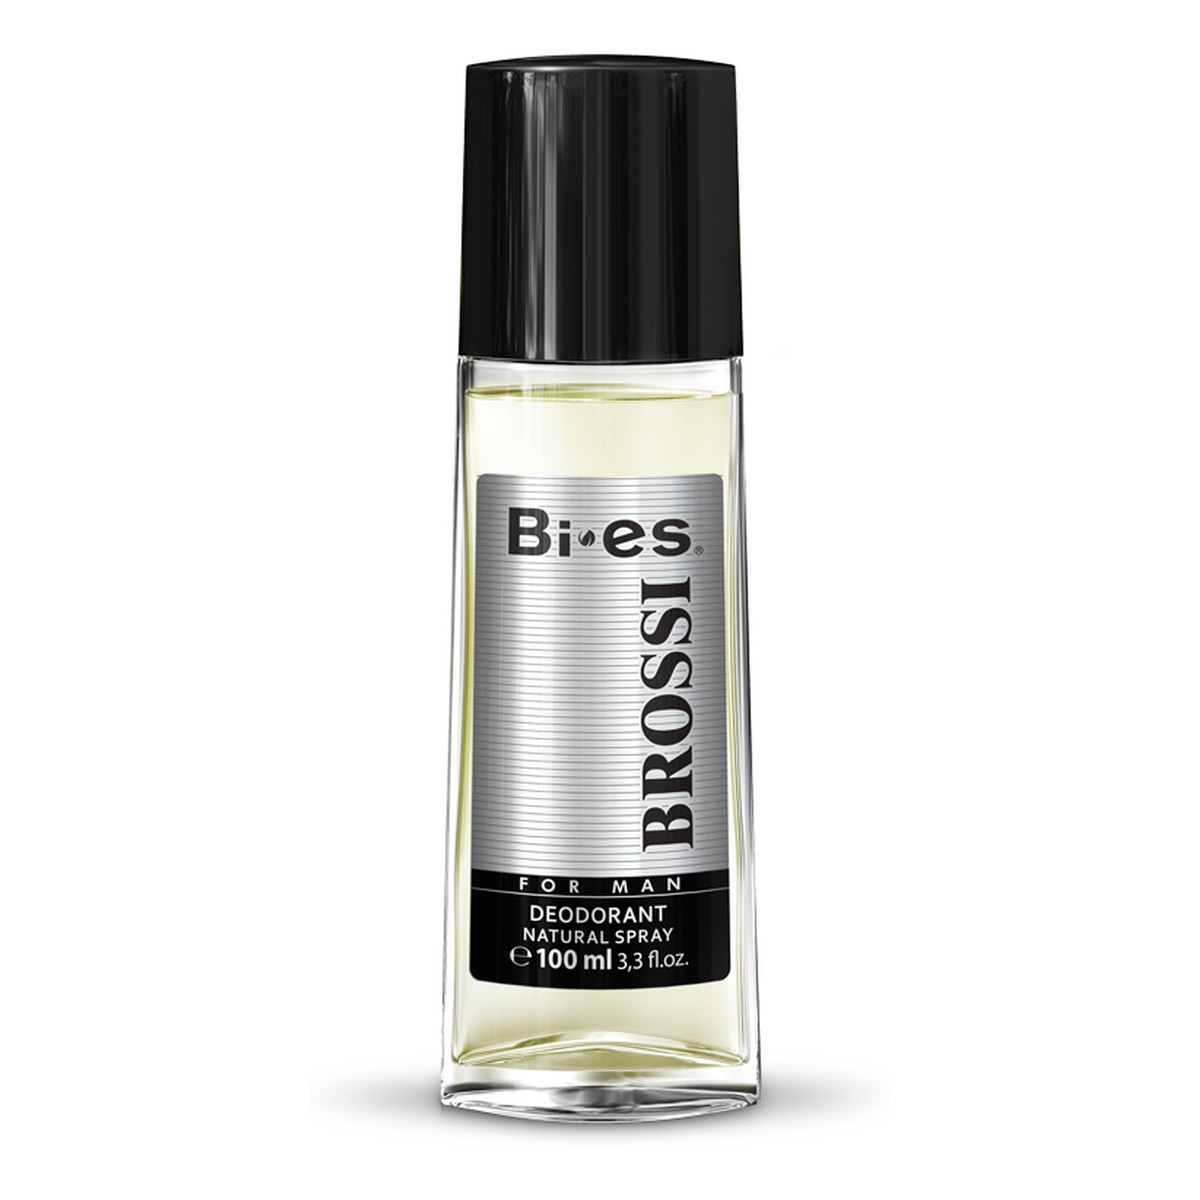 Bi-es Brossi Dezodorant Spray 100ml